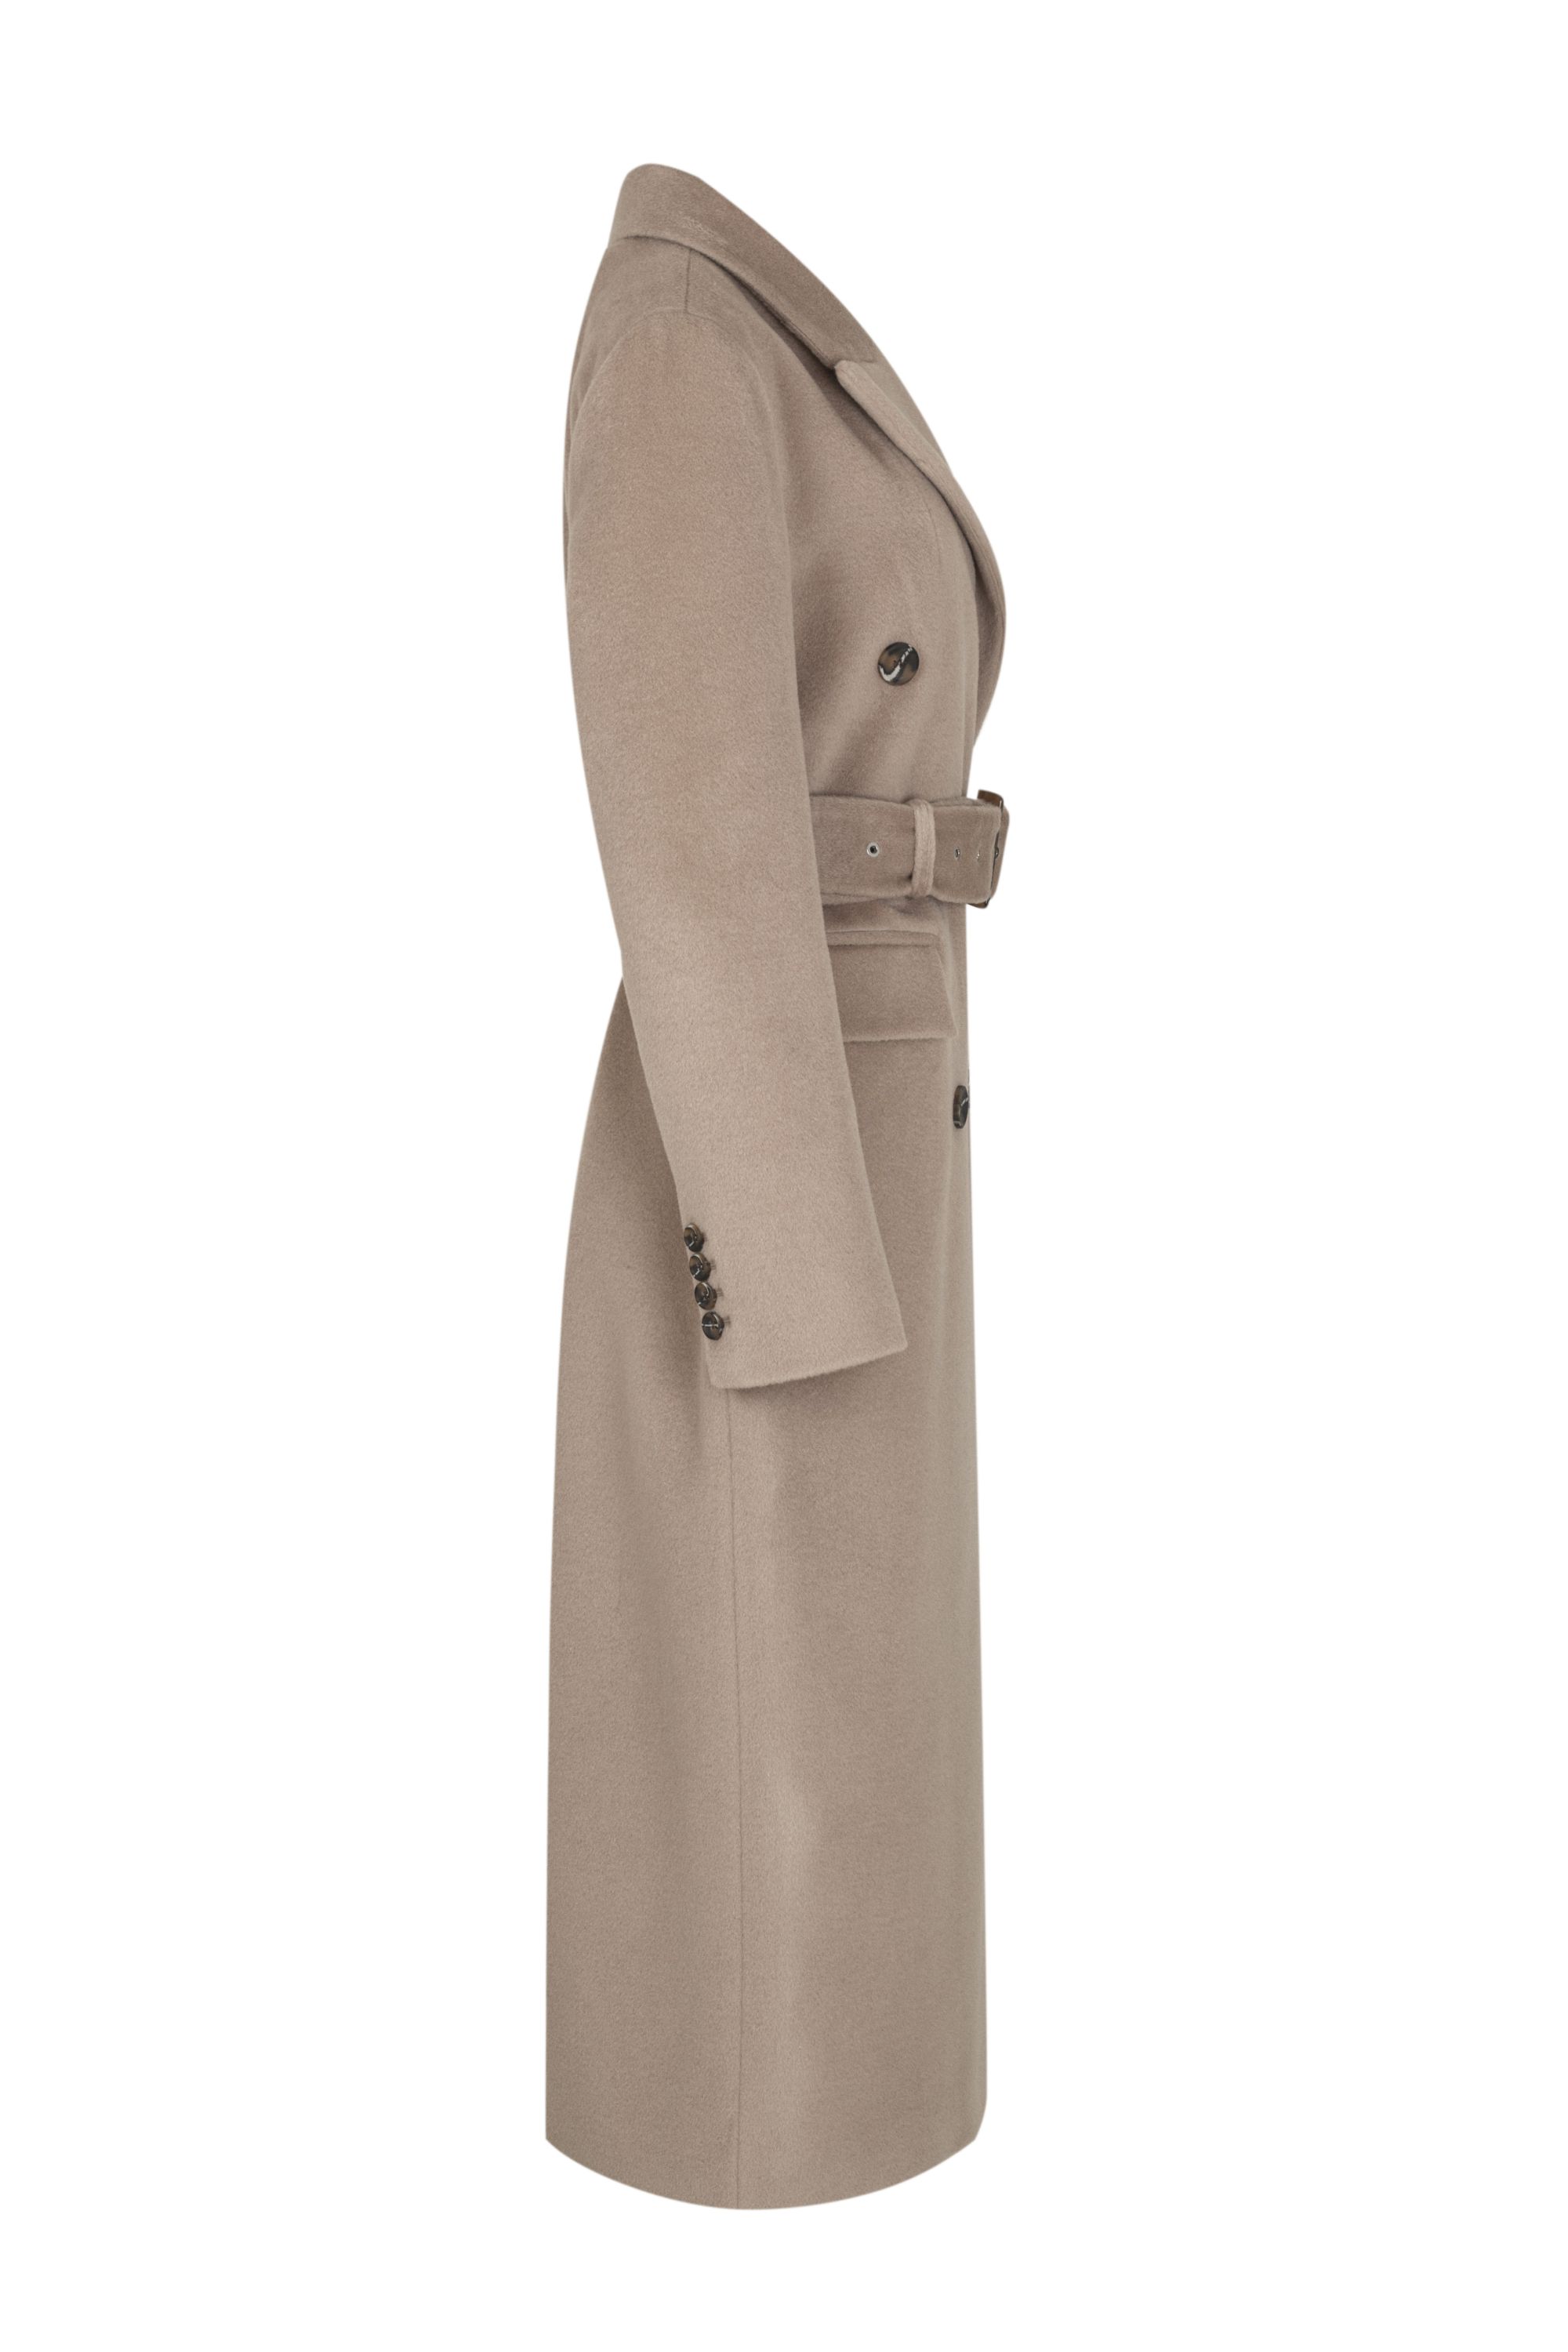 Пальто женское демисезонное 1-12633-1. Фото 2.